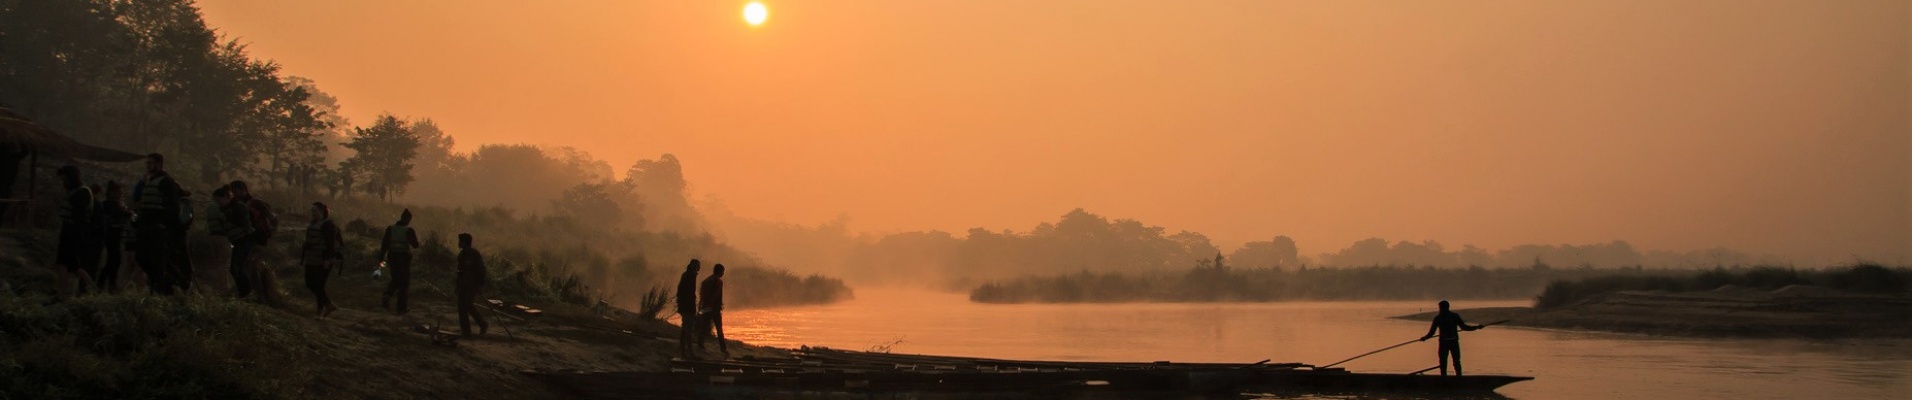 Lever de soleil sur la rivière Rapti, Chitwan